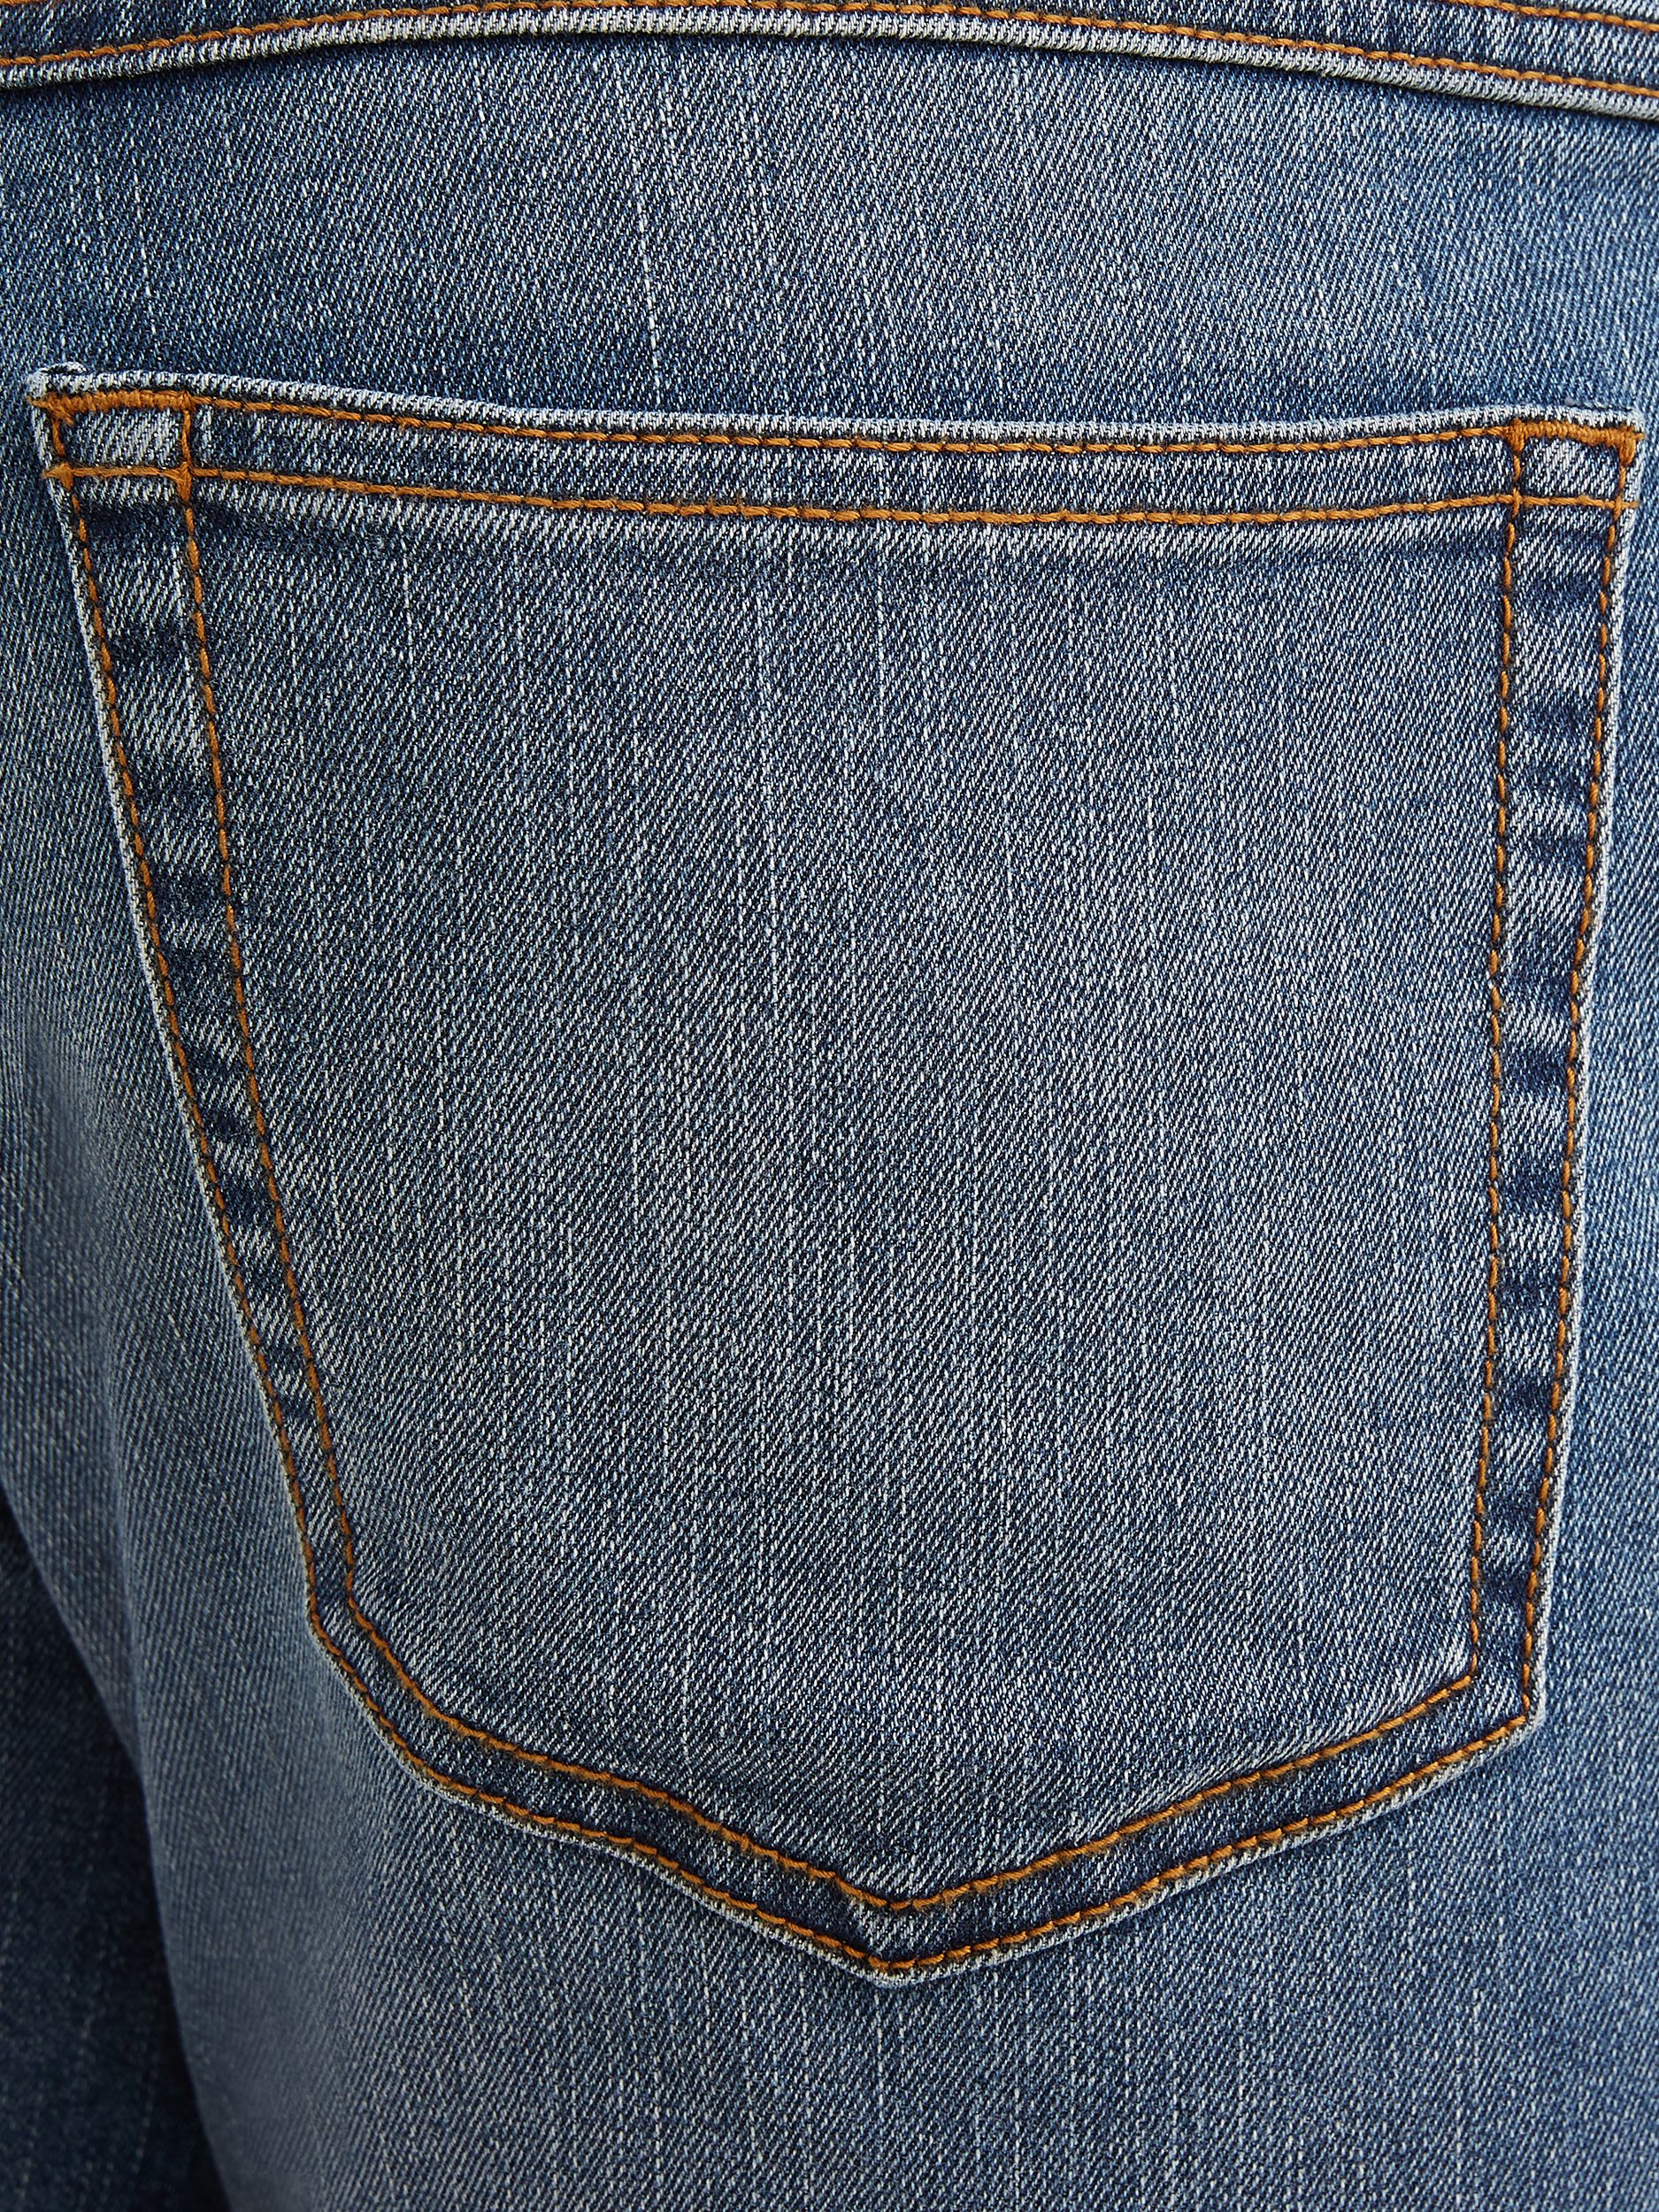 George Men's Premium Denim Jeans - image 2 of 4